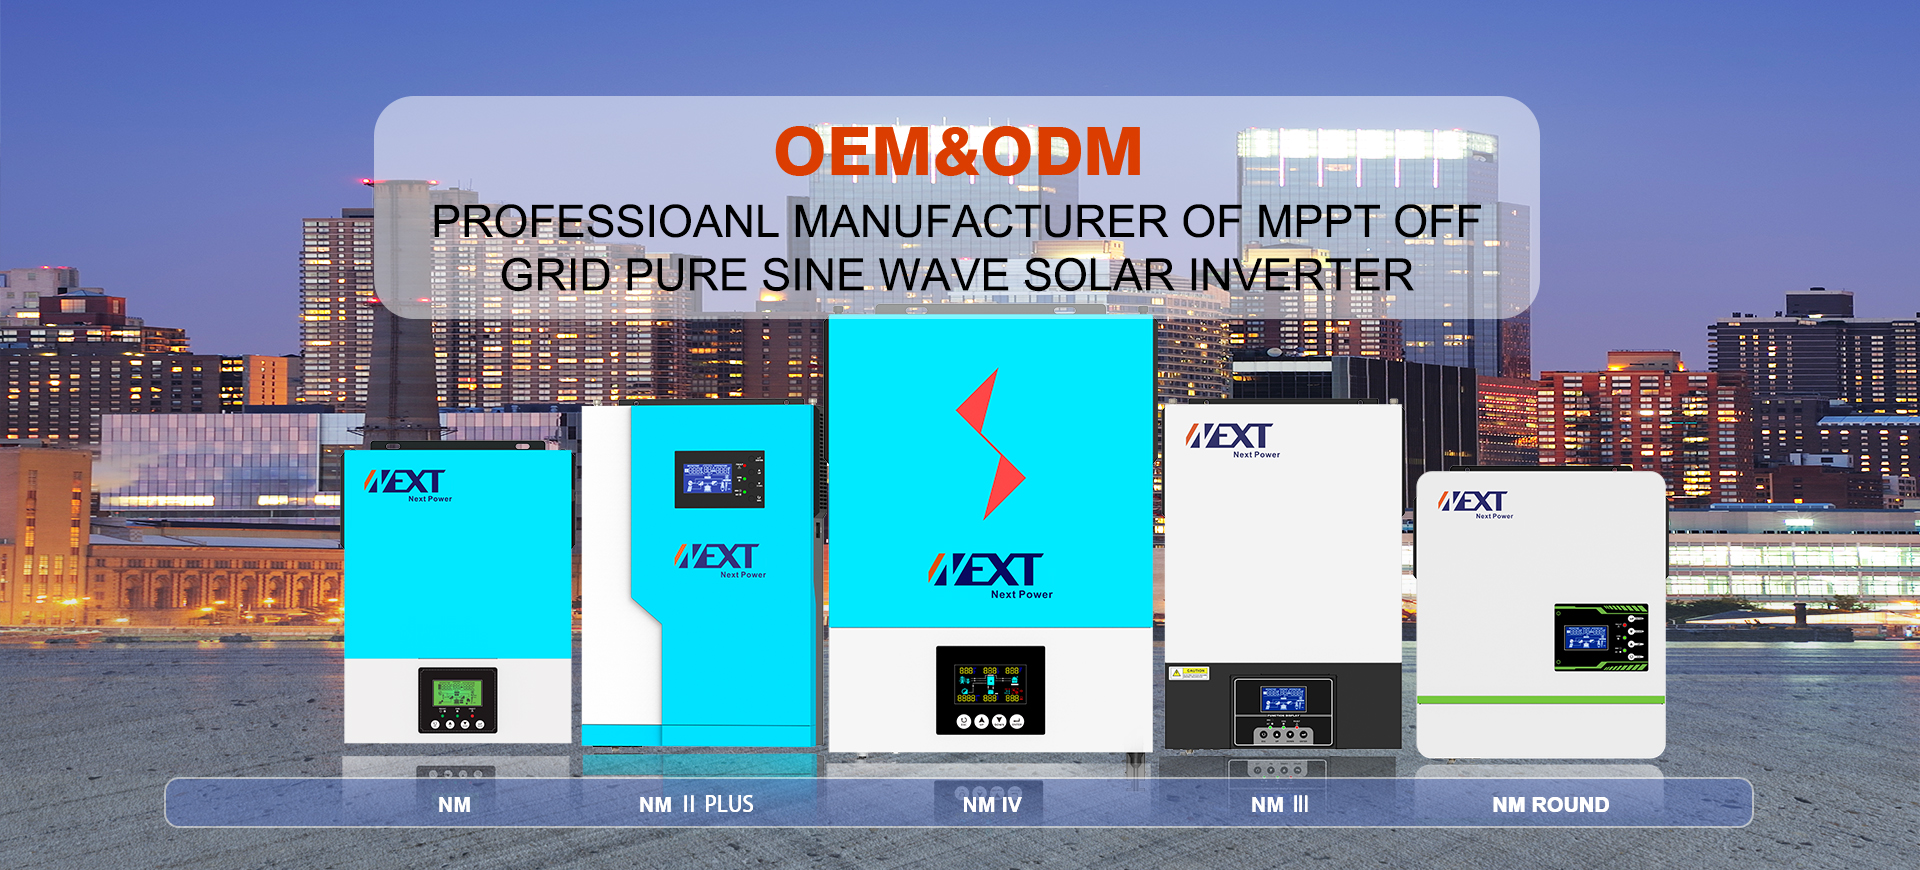 12v Commercial Solar Inverter